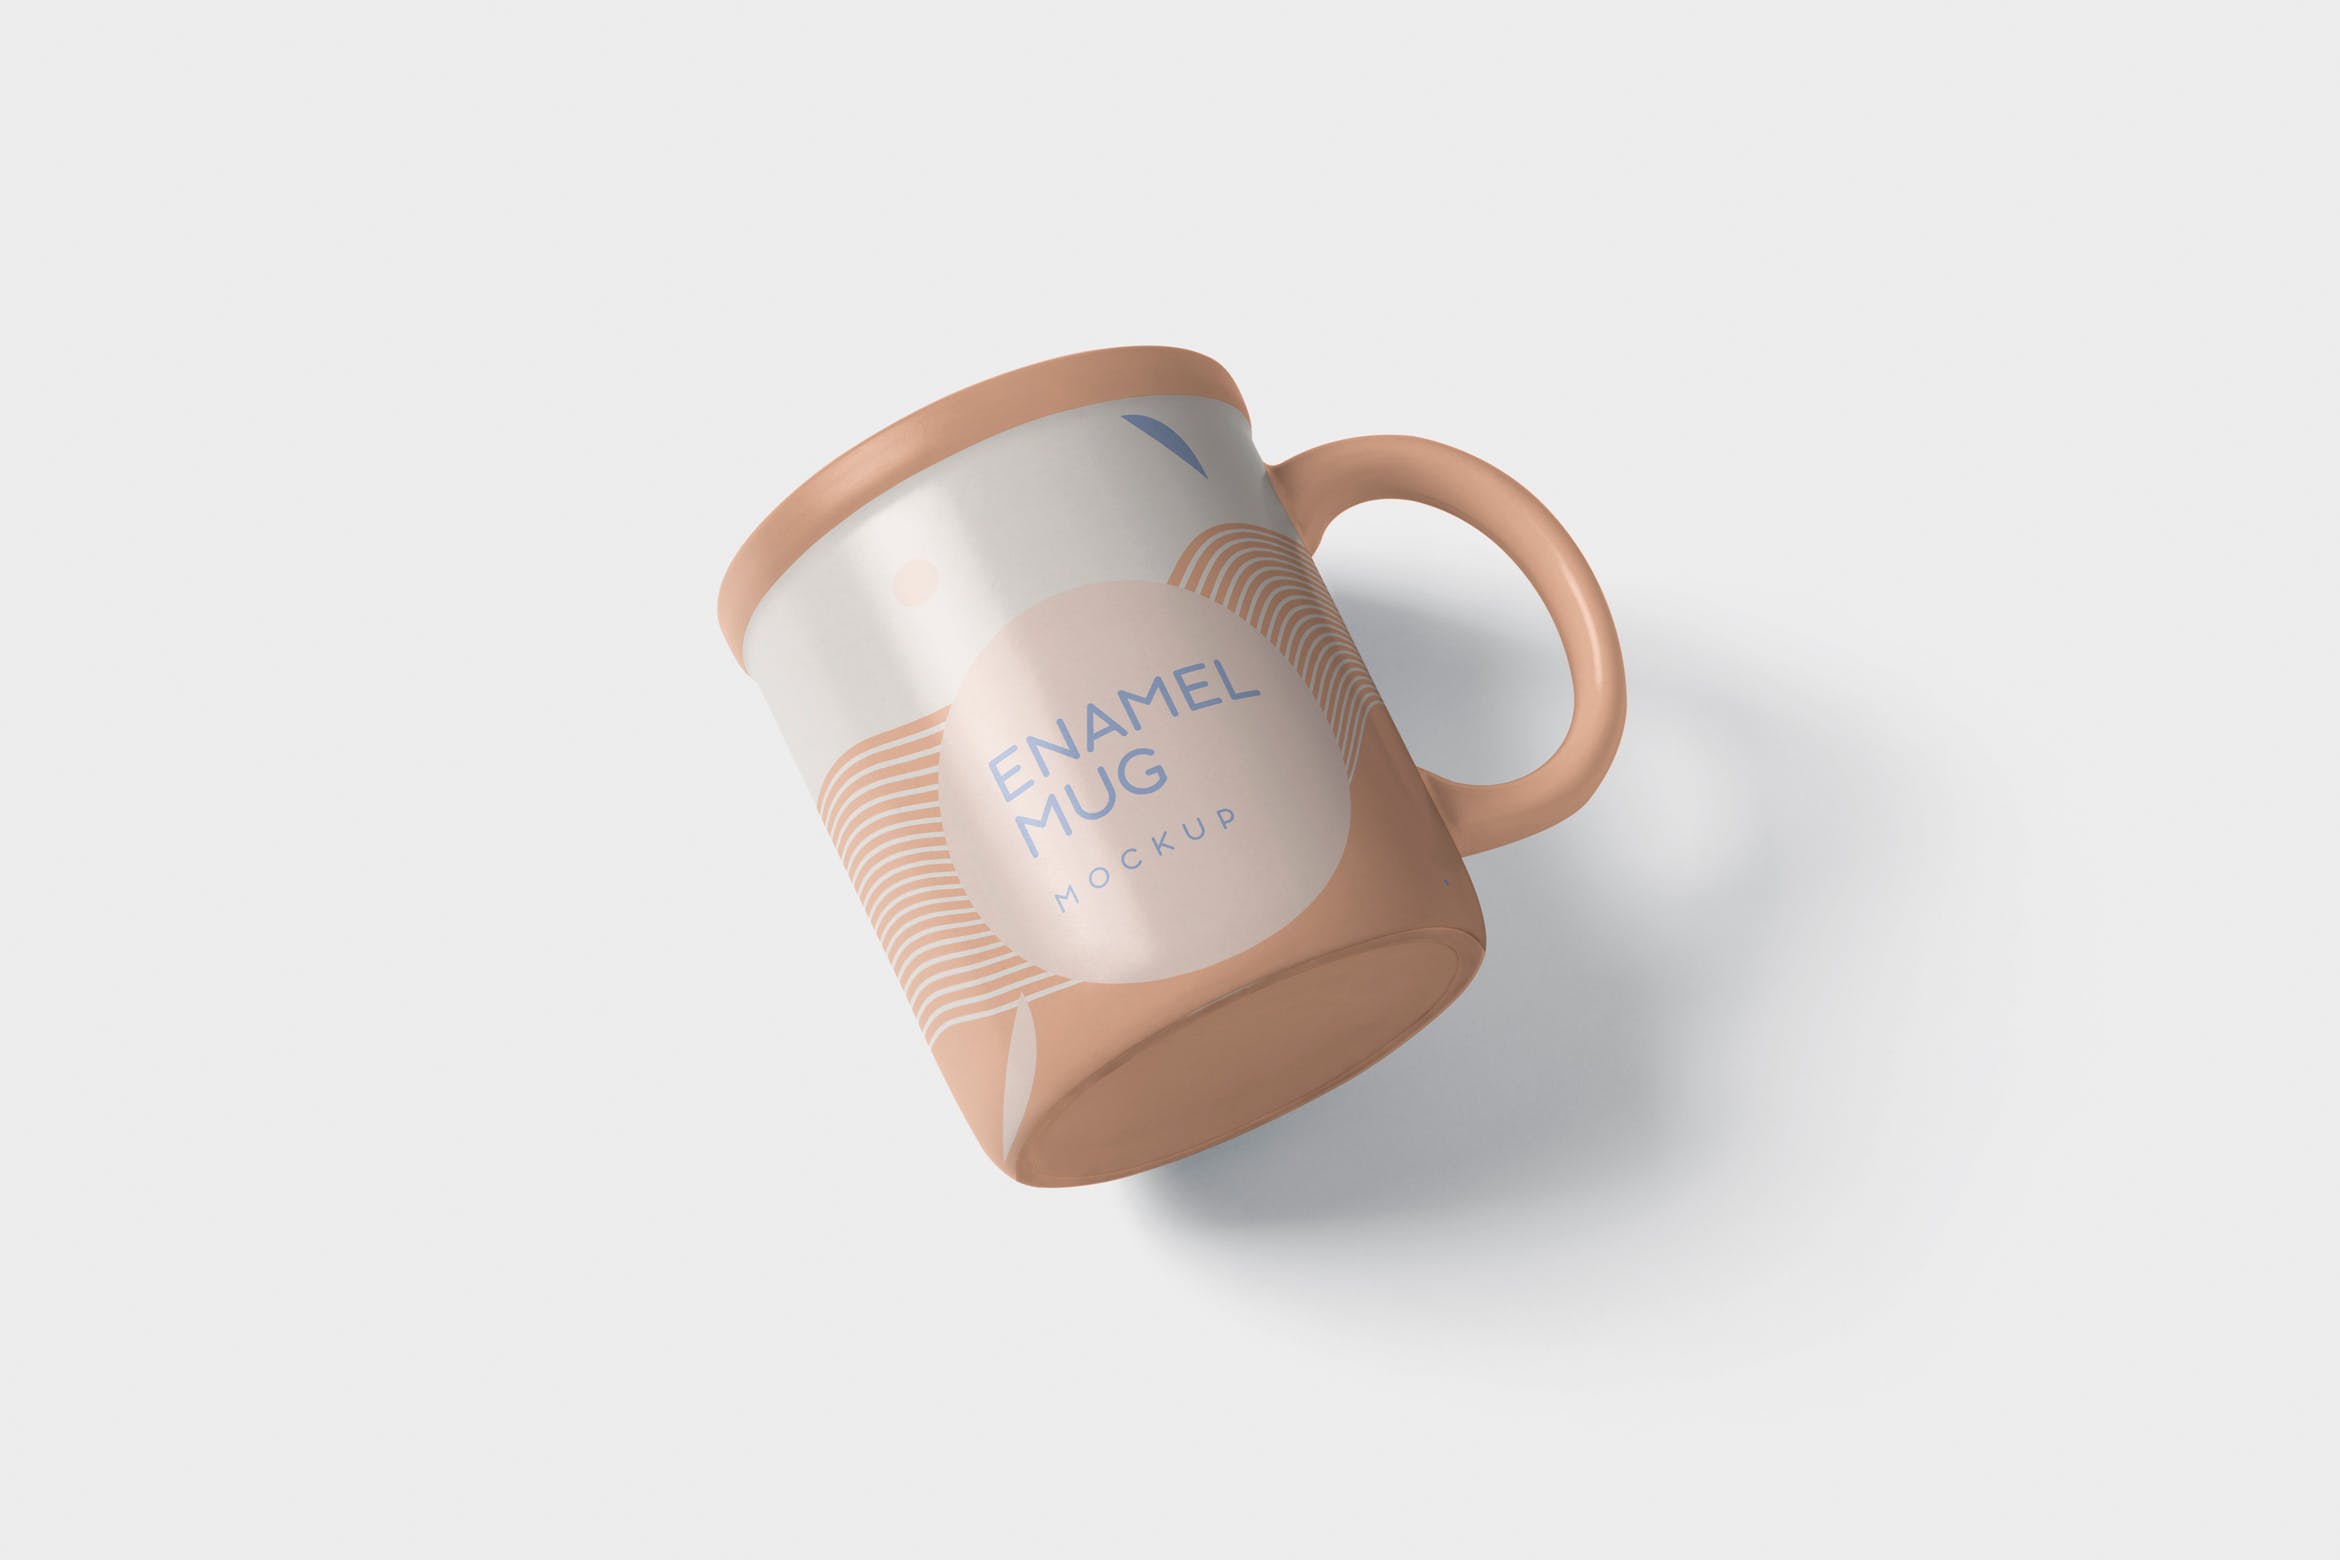 带把手圆形搪瓷杯马克杯图案设计蚂蚁素材精选 Round Enamel Mug Mockup With Handle插图